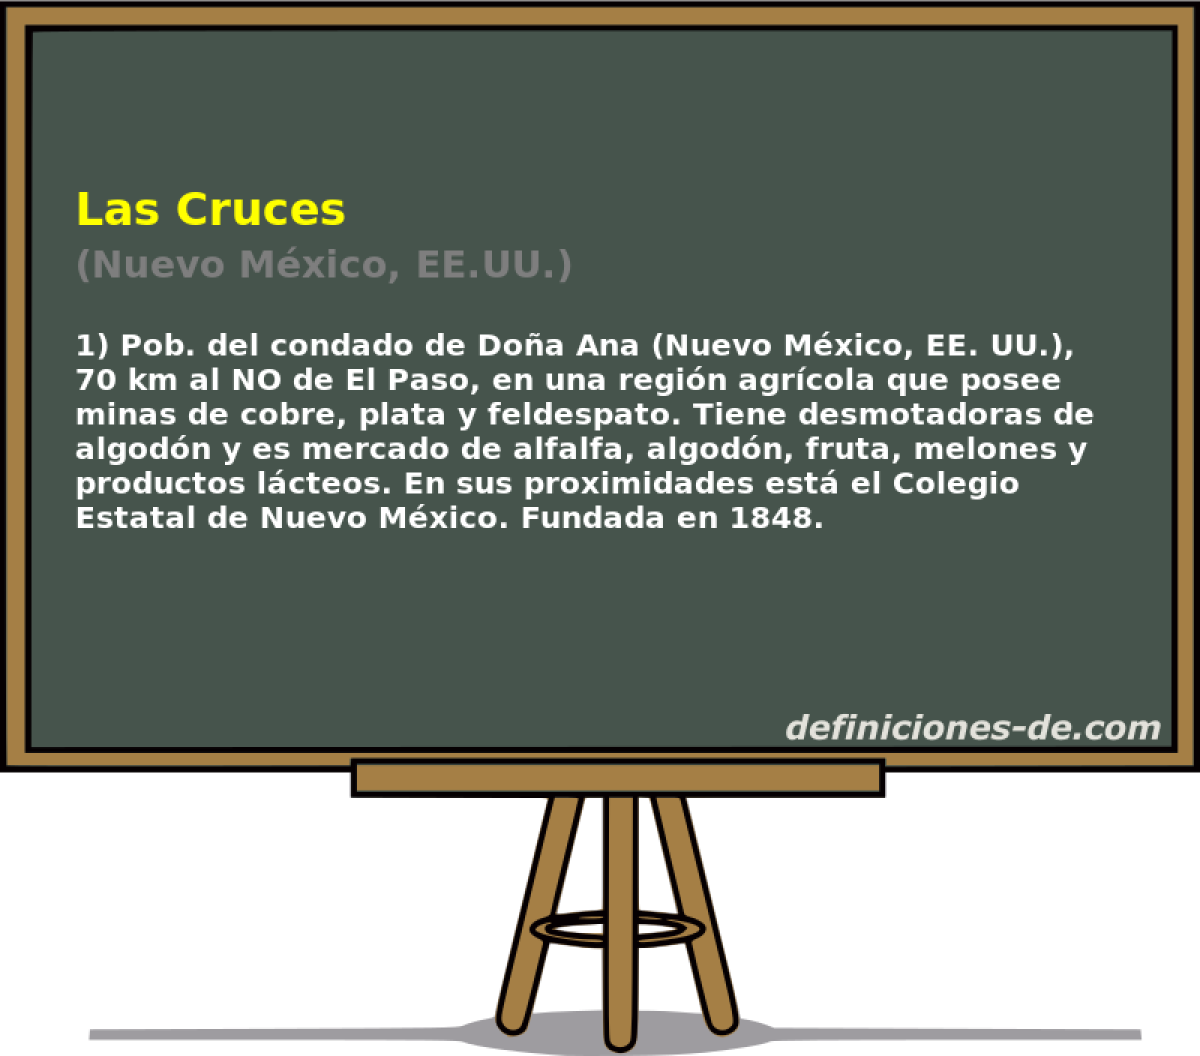 Las Cruces (Nuevo Mxico, EE.UU.)